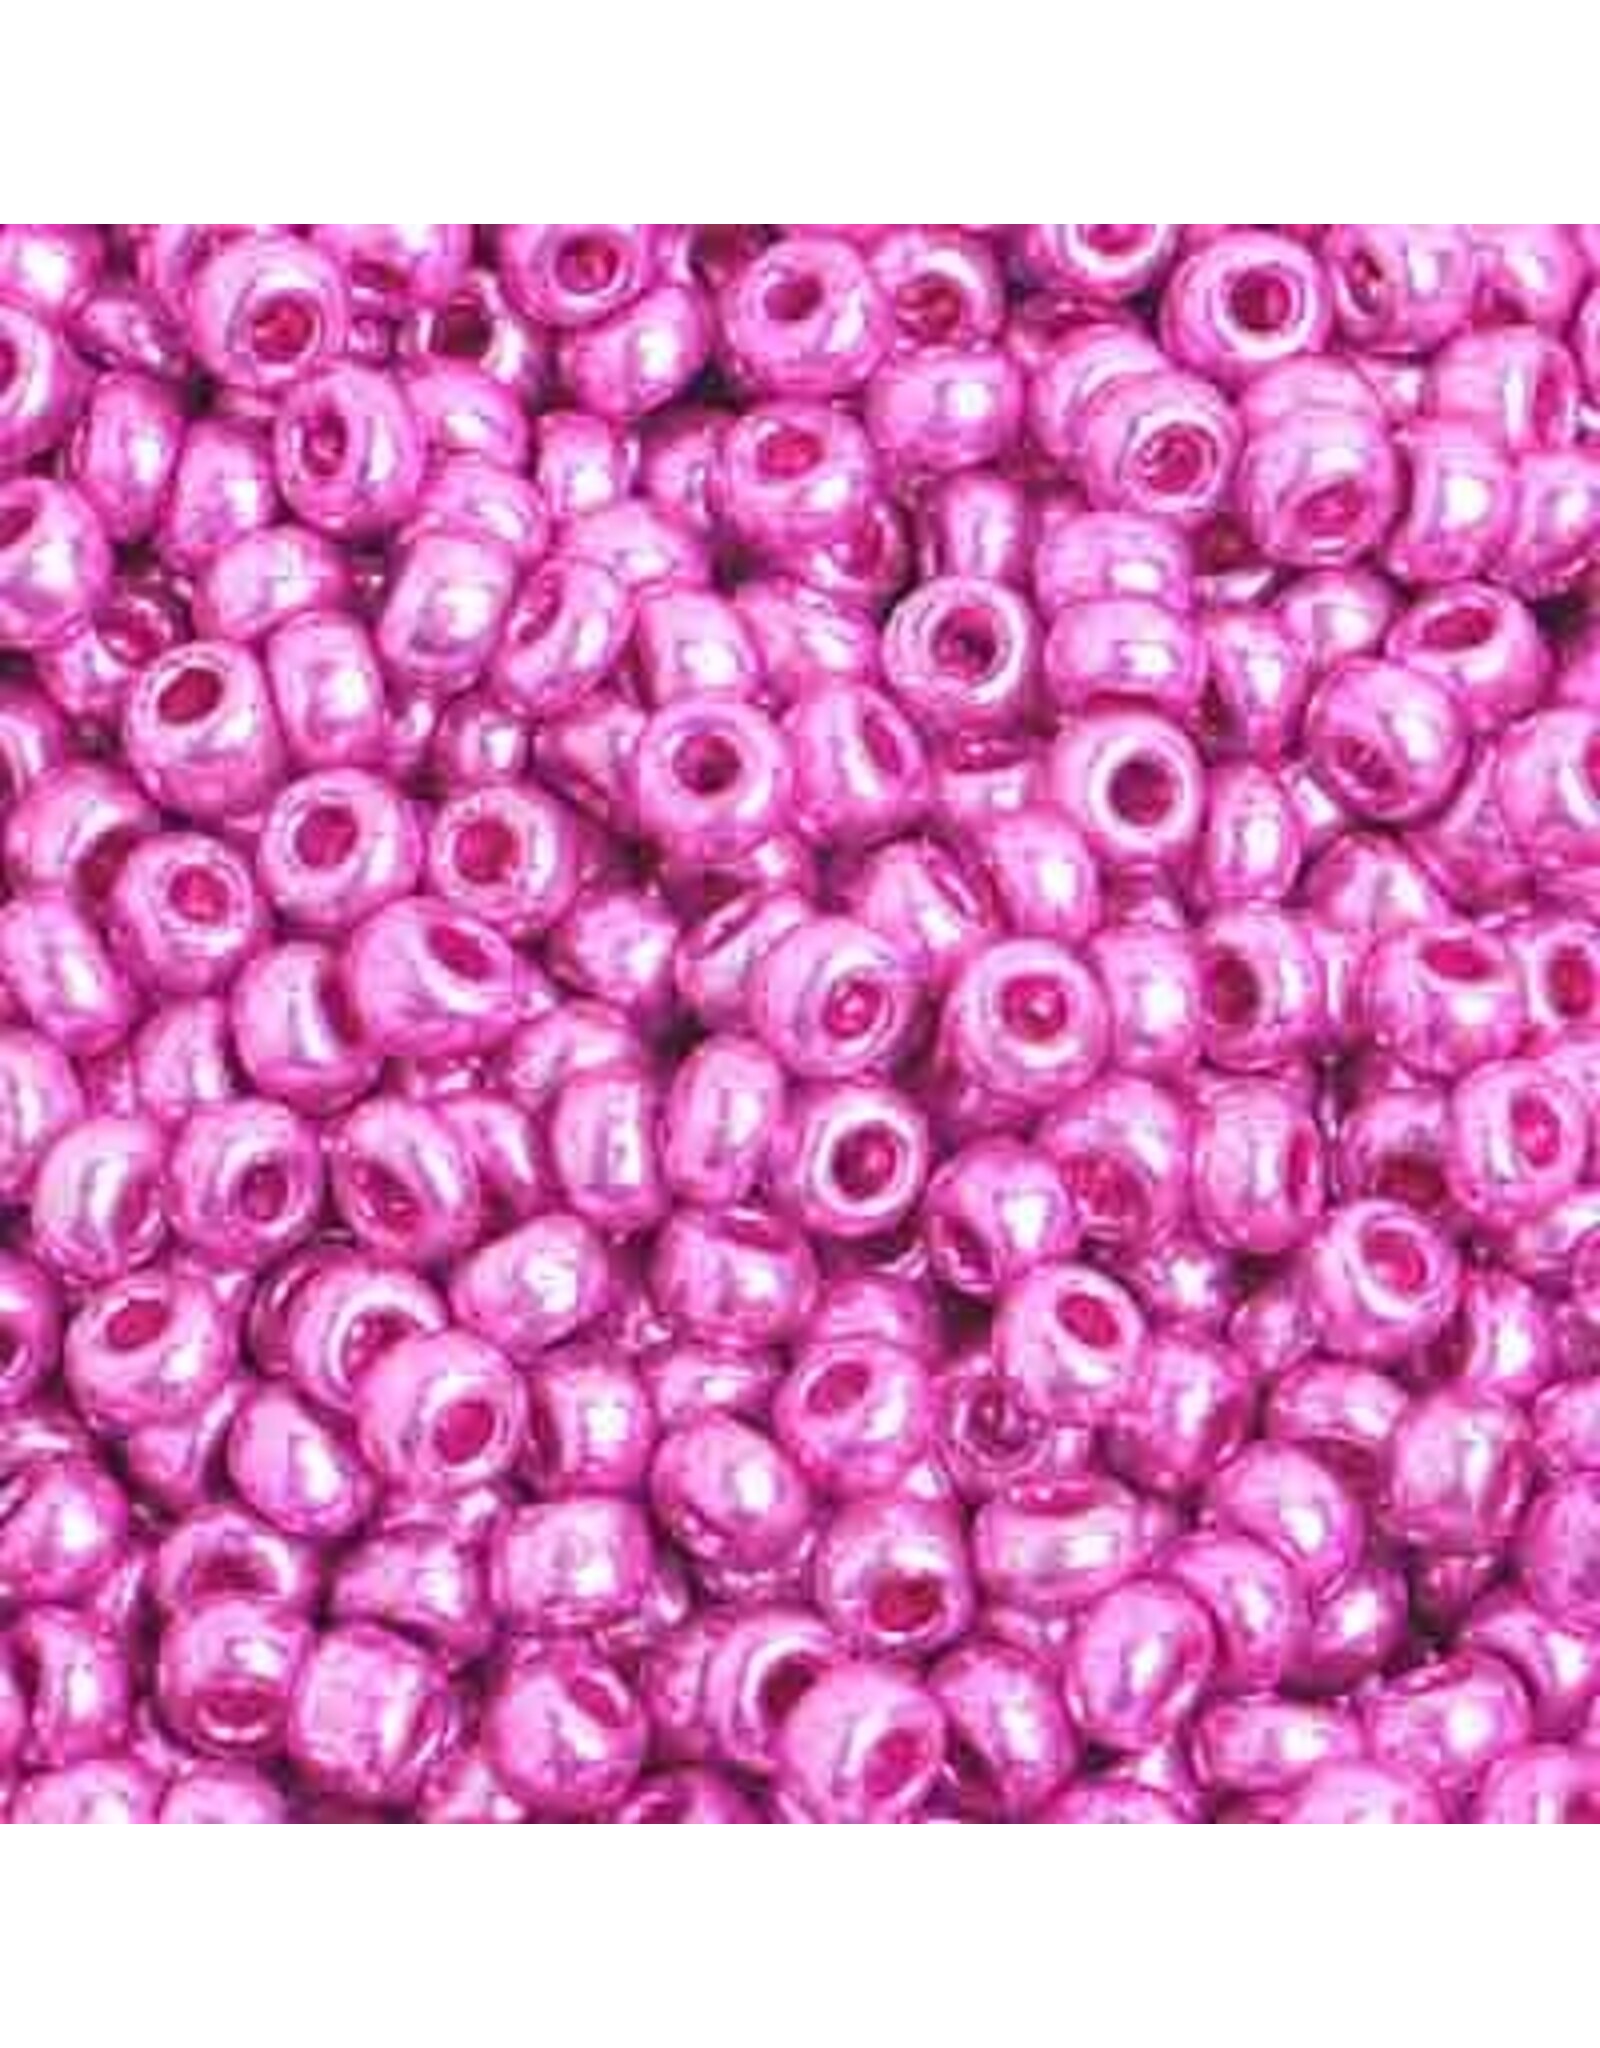 Czech 229240  8  Seed   Pink Metallic